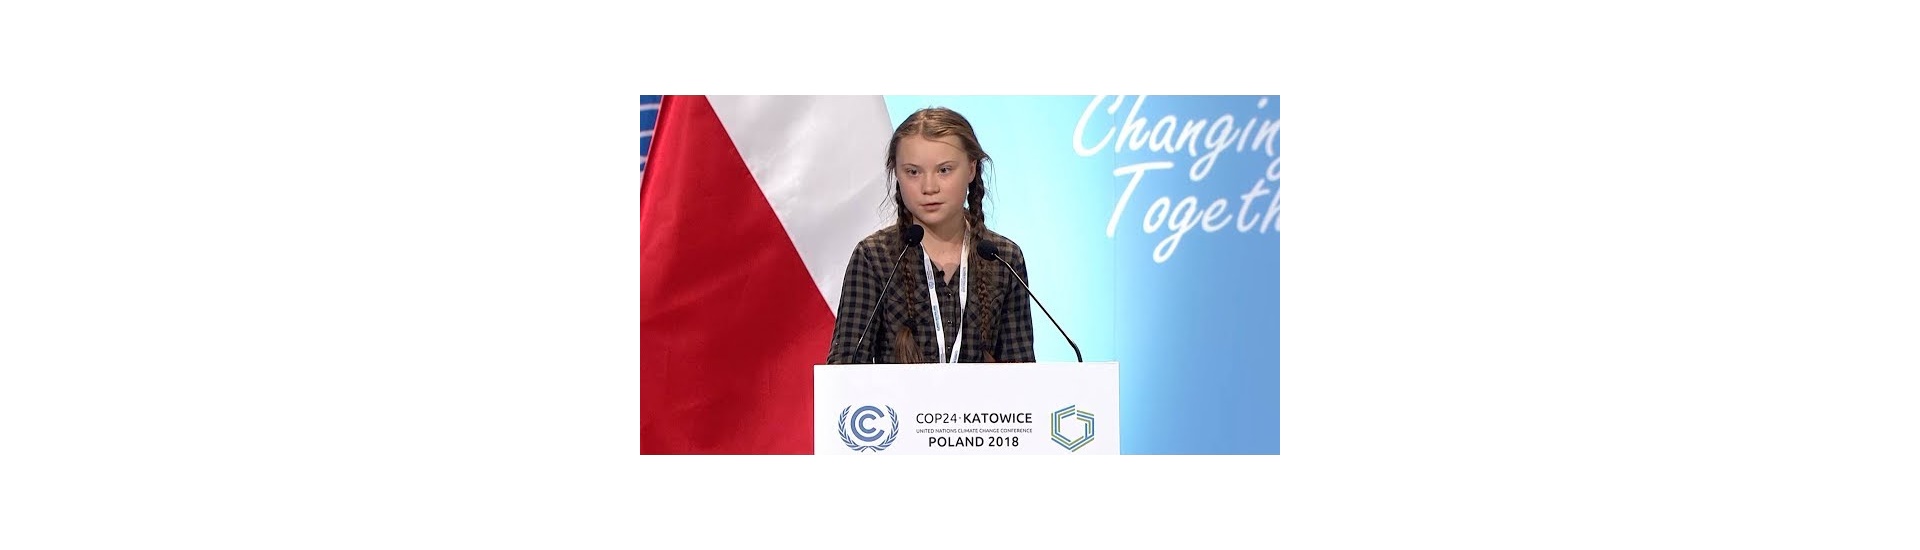 גרטה טונברג נאום ועידת האקלים בקטוביץ 2018